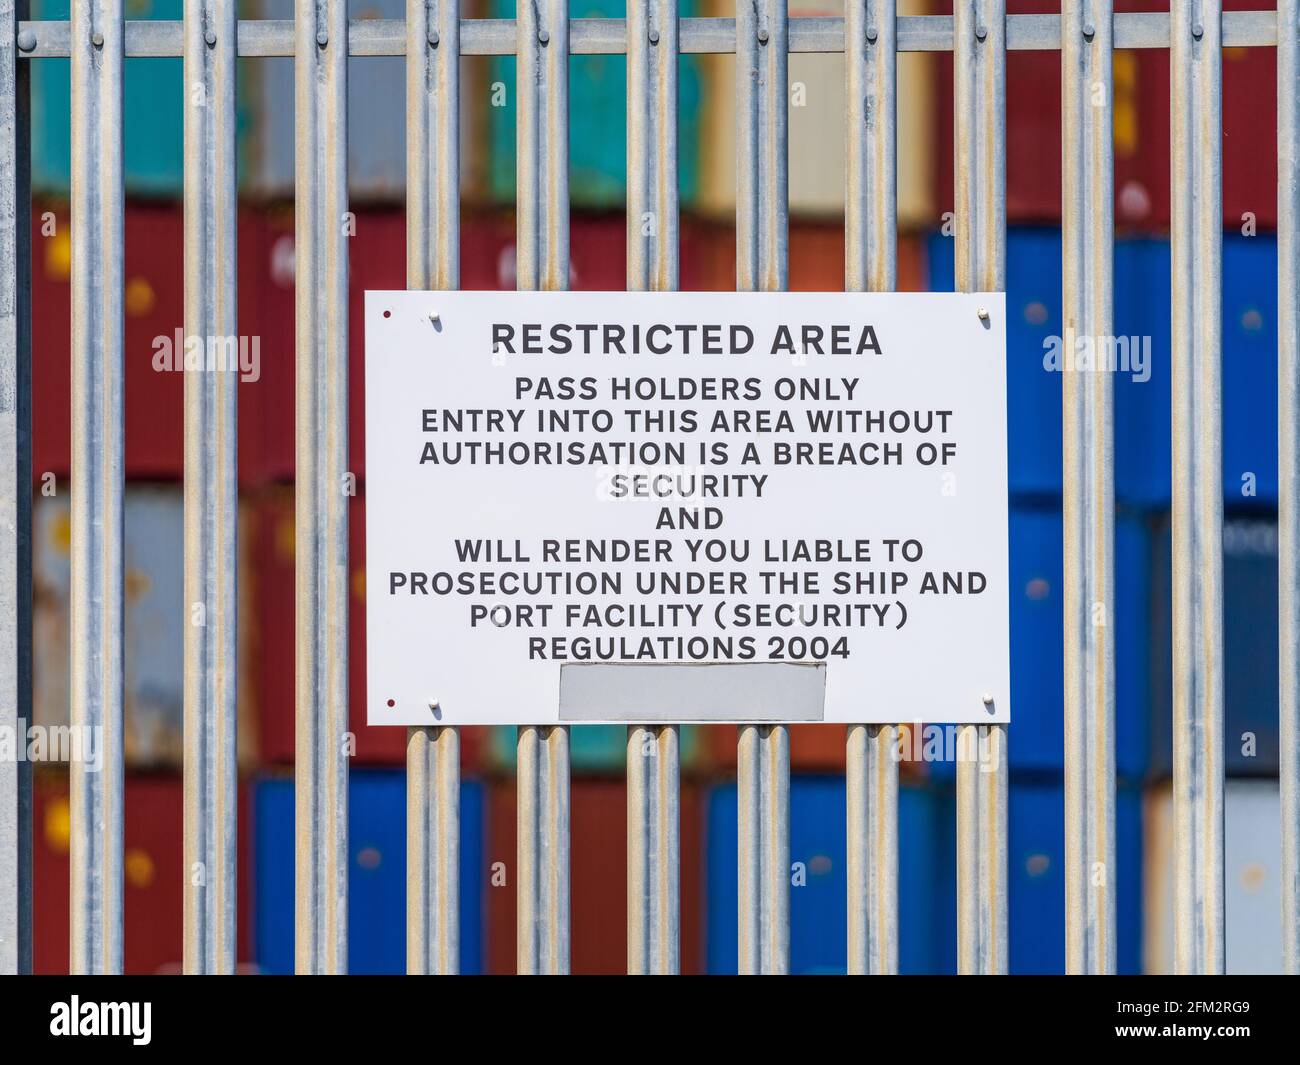 Sicurezza delle porte del Regno Unito - limitazioni di accesso. Segnaletica di sicurezza per le aree soggette a restrizioni intorno al porto di spedizione dei container di Felixstowe. Foto Stock